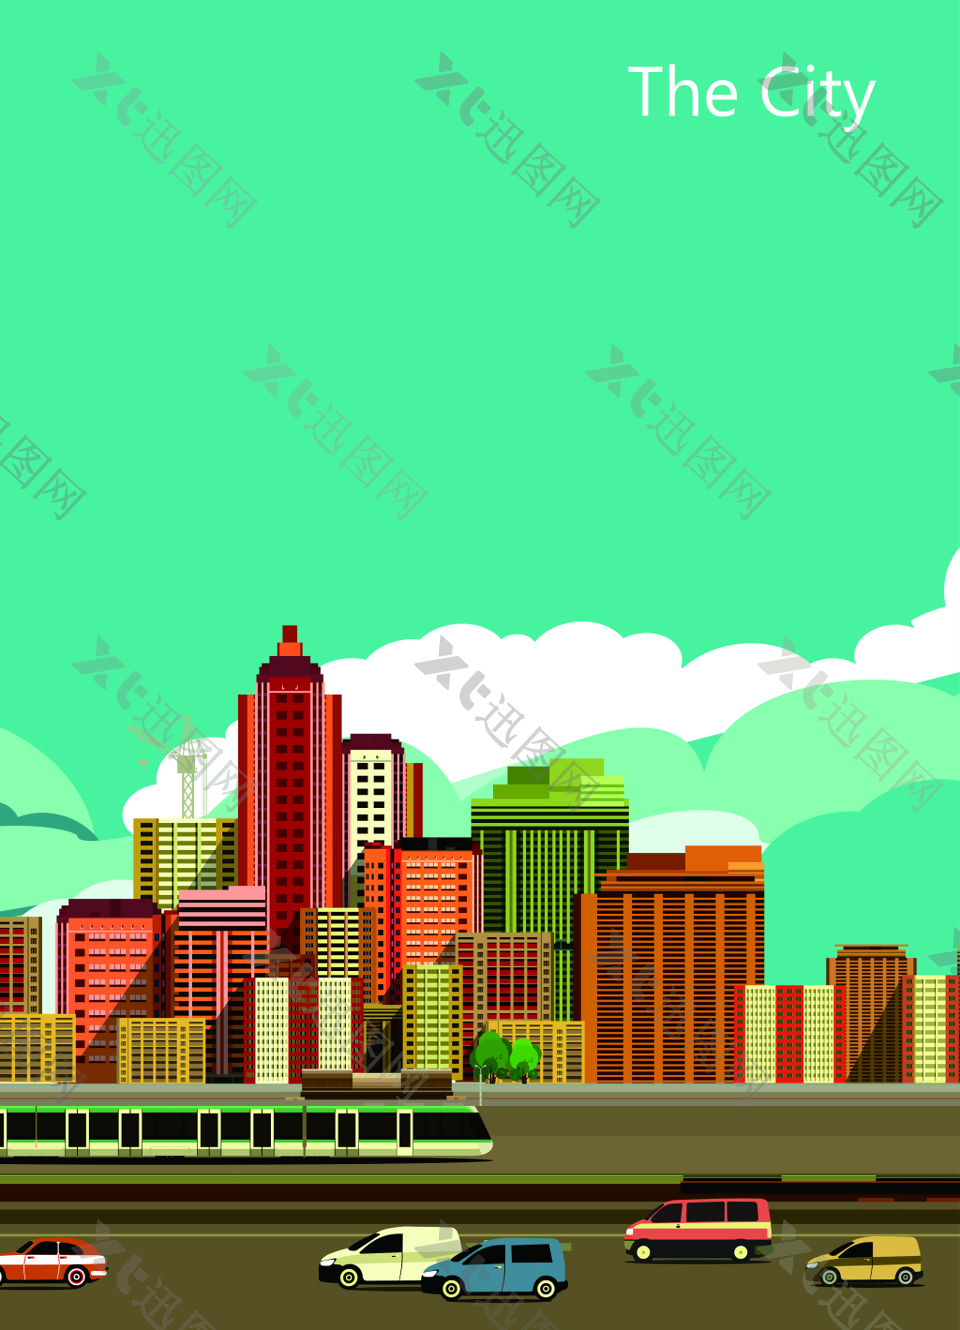 彩色都市建筑插画矢量海报背景素材